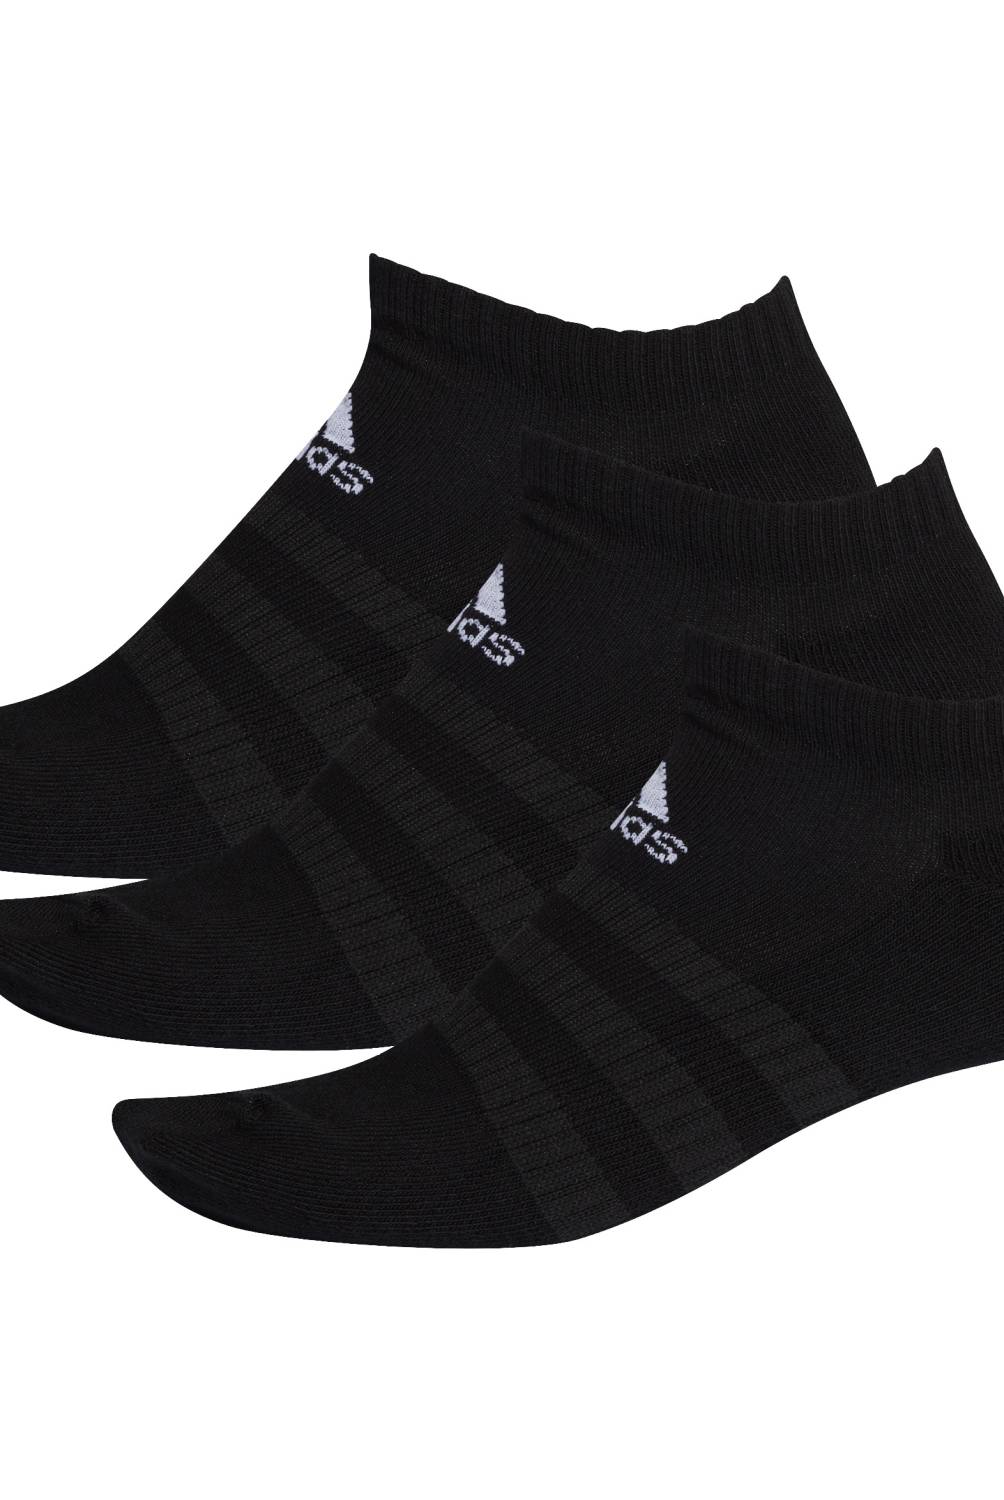 ADIDAS - Pack De 3 Calcetines Cortos Deportivos Unisex Adidas